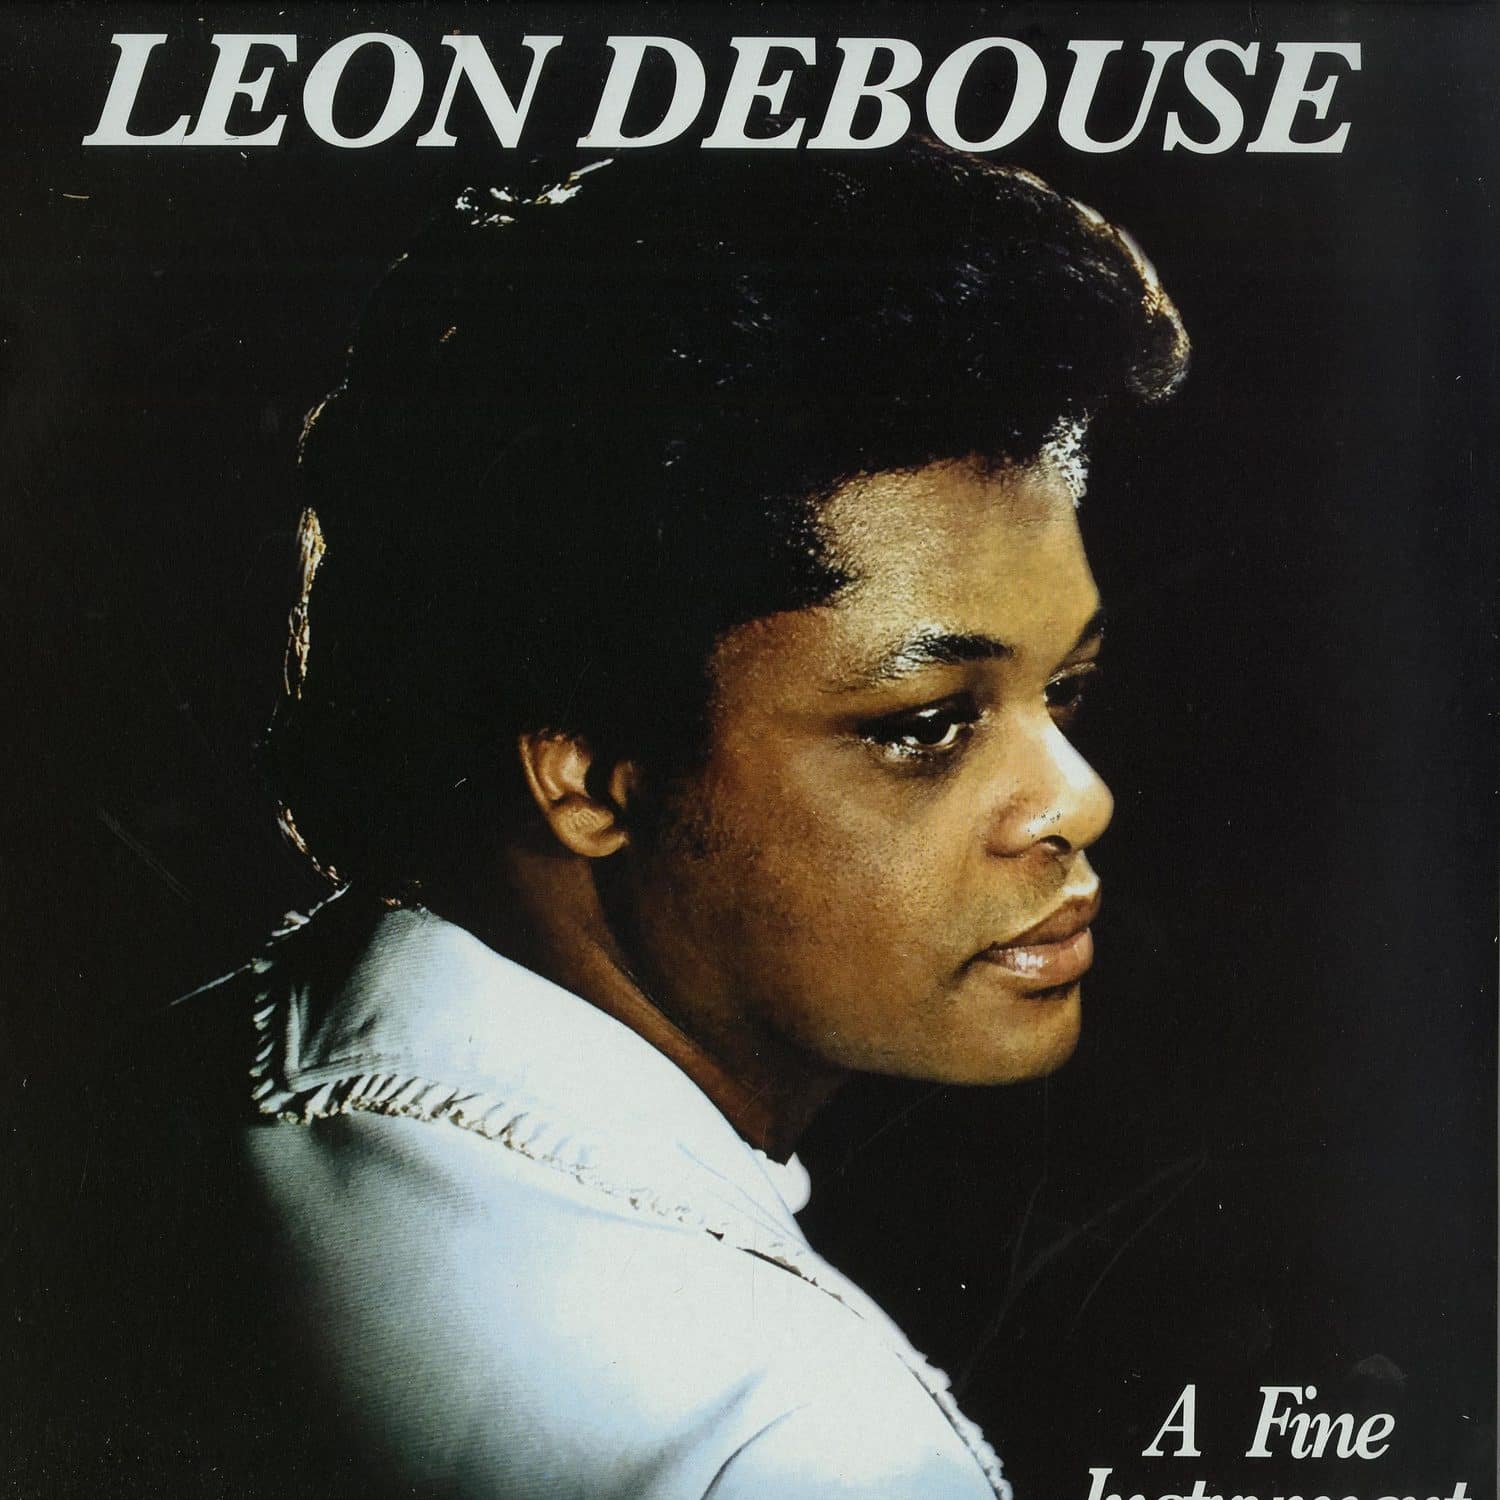 Leon Debouse - A FINE INSTRUMENT 